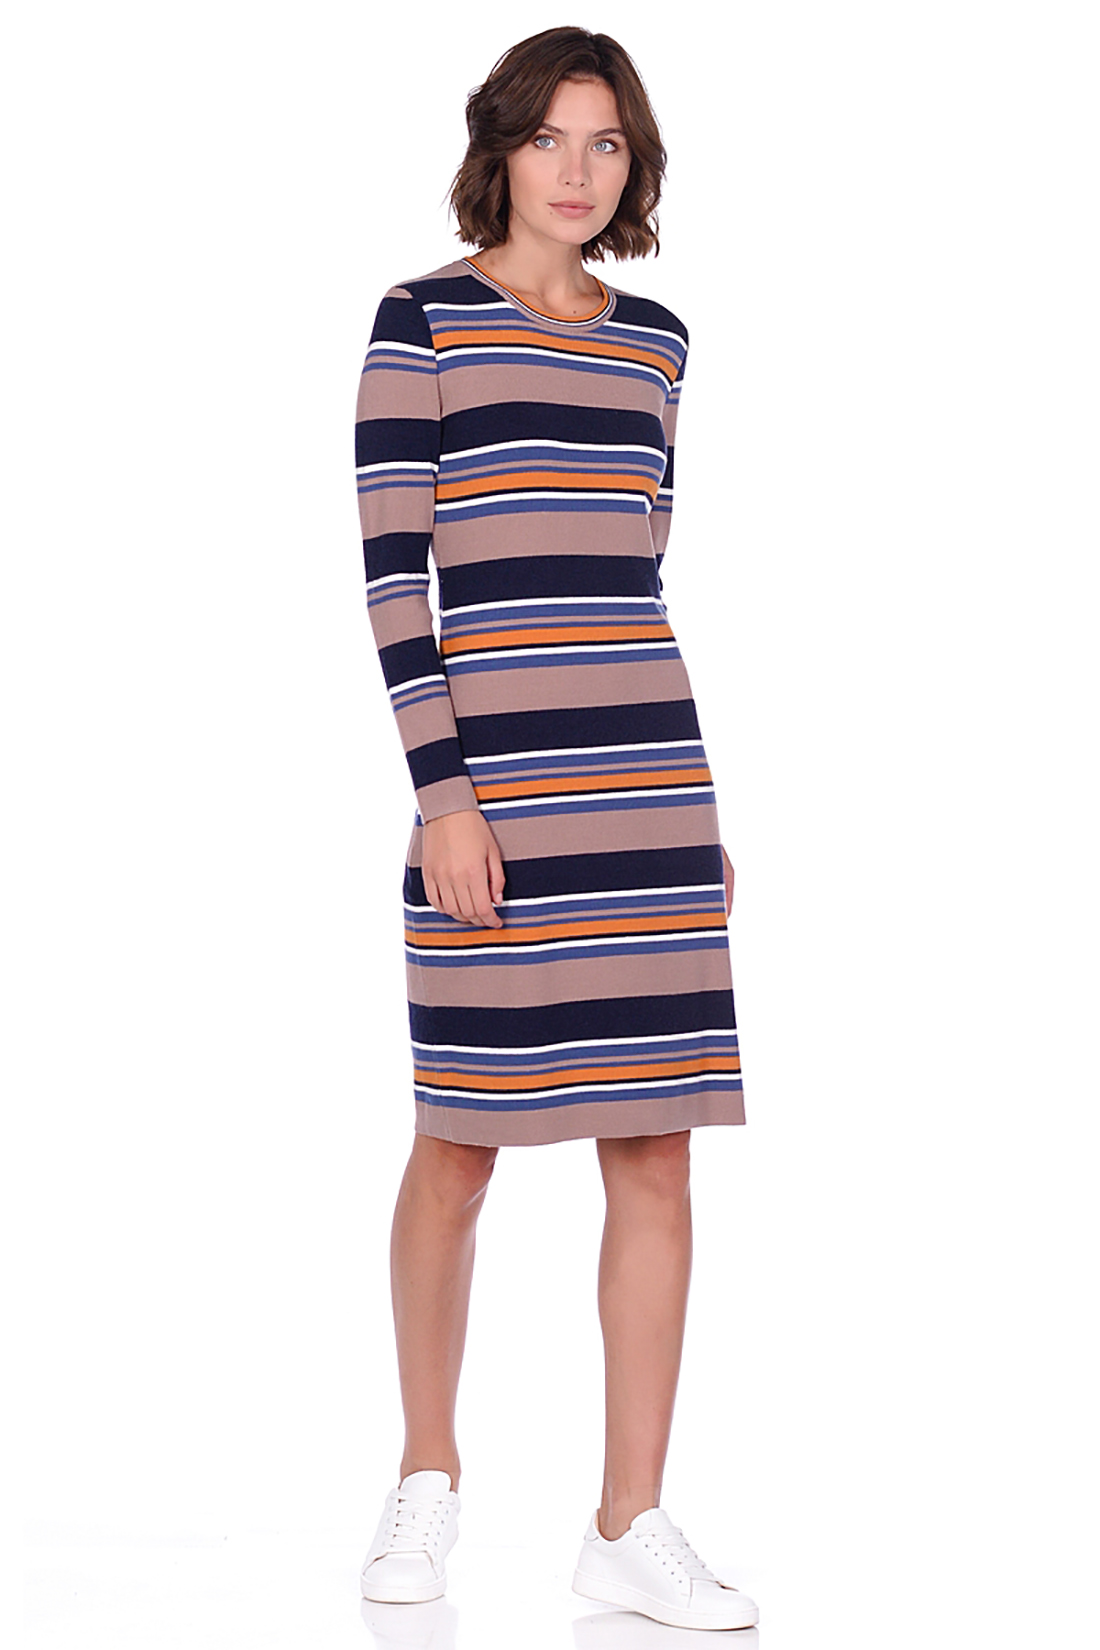 Платье из трикотажа в полоску (арт. baon B459536), размер L, цвет multicolor striped#многоцветный Платье из трикотажа в полоску (арт. baon B459536) - фото 4